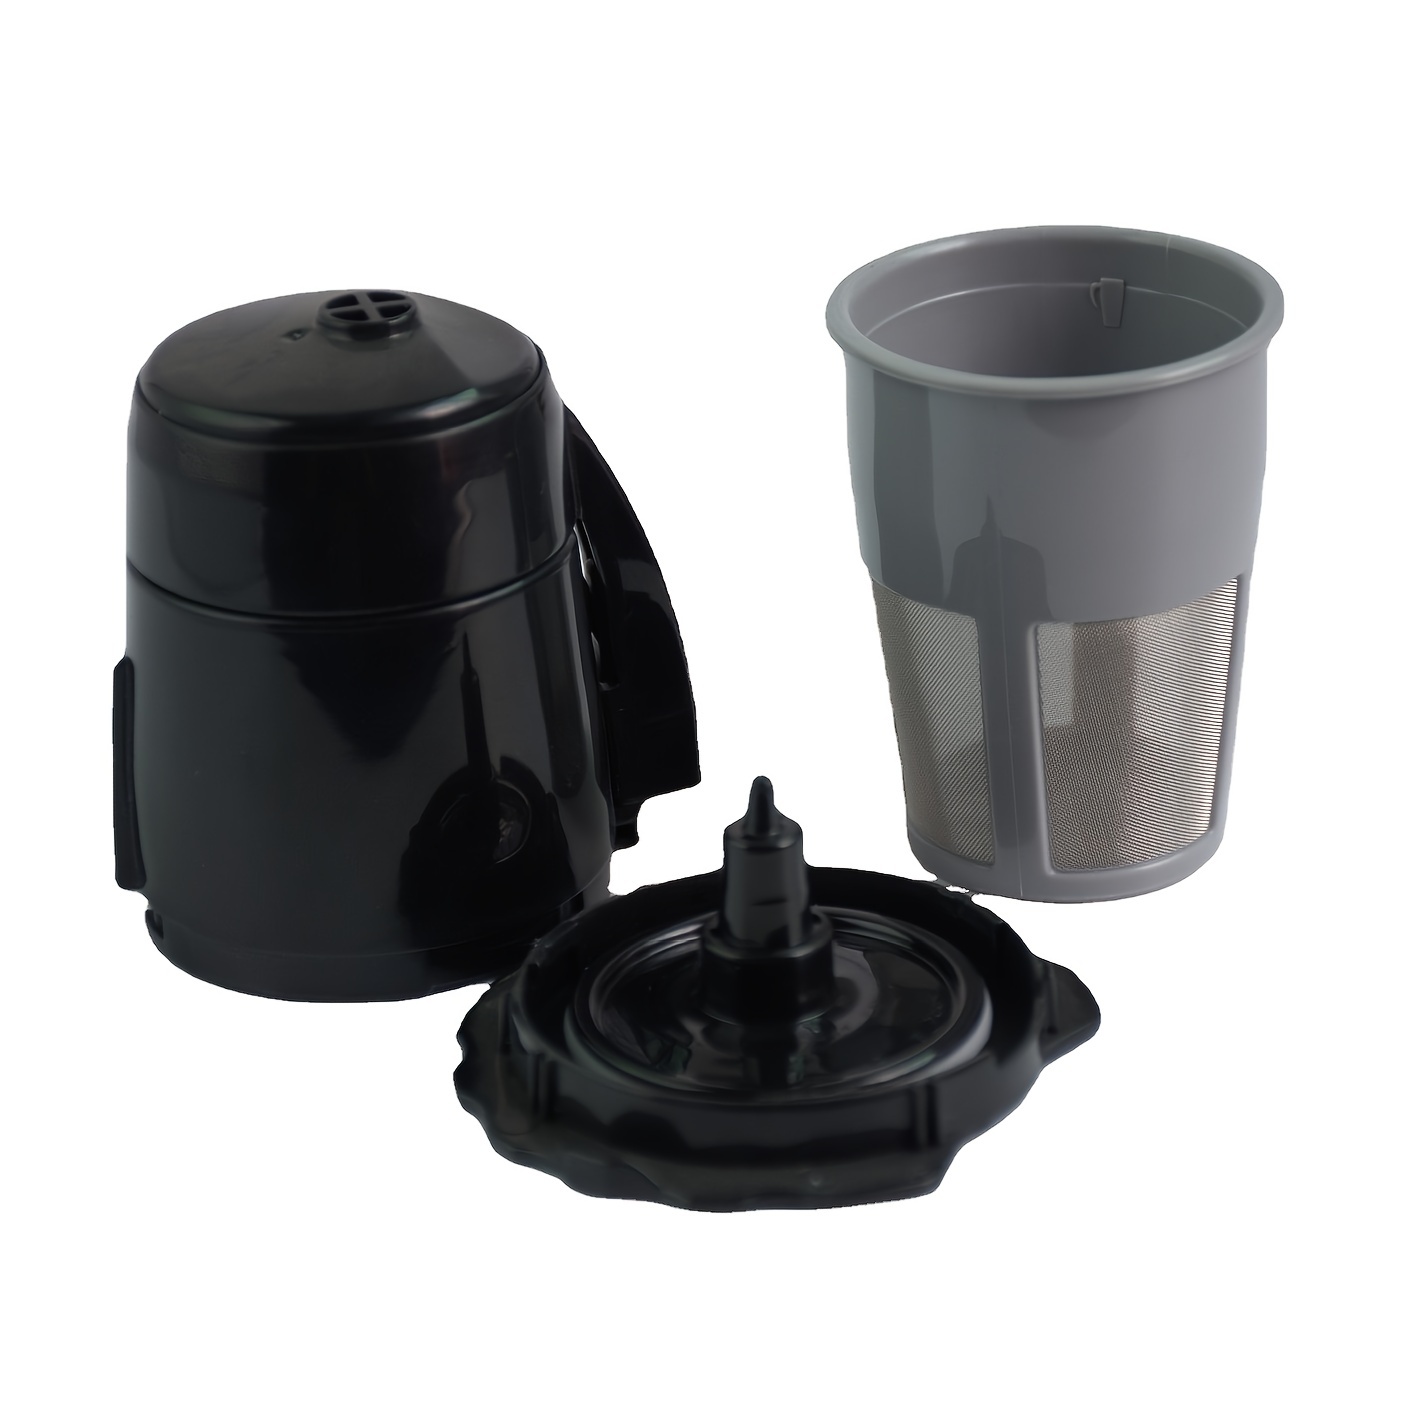 Filtro de cápsulas de café K-cup reutilizable, filtro K-cup